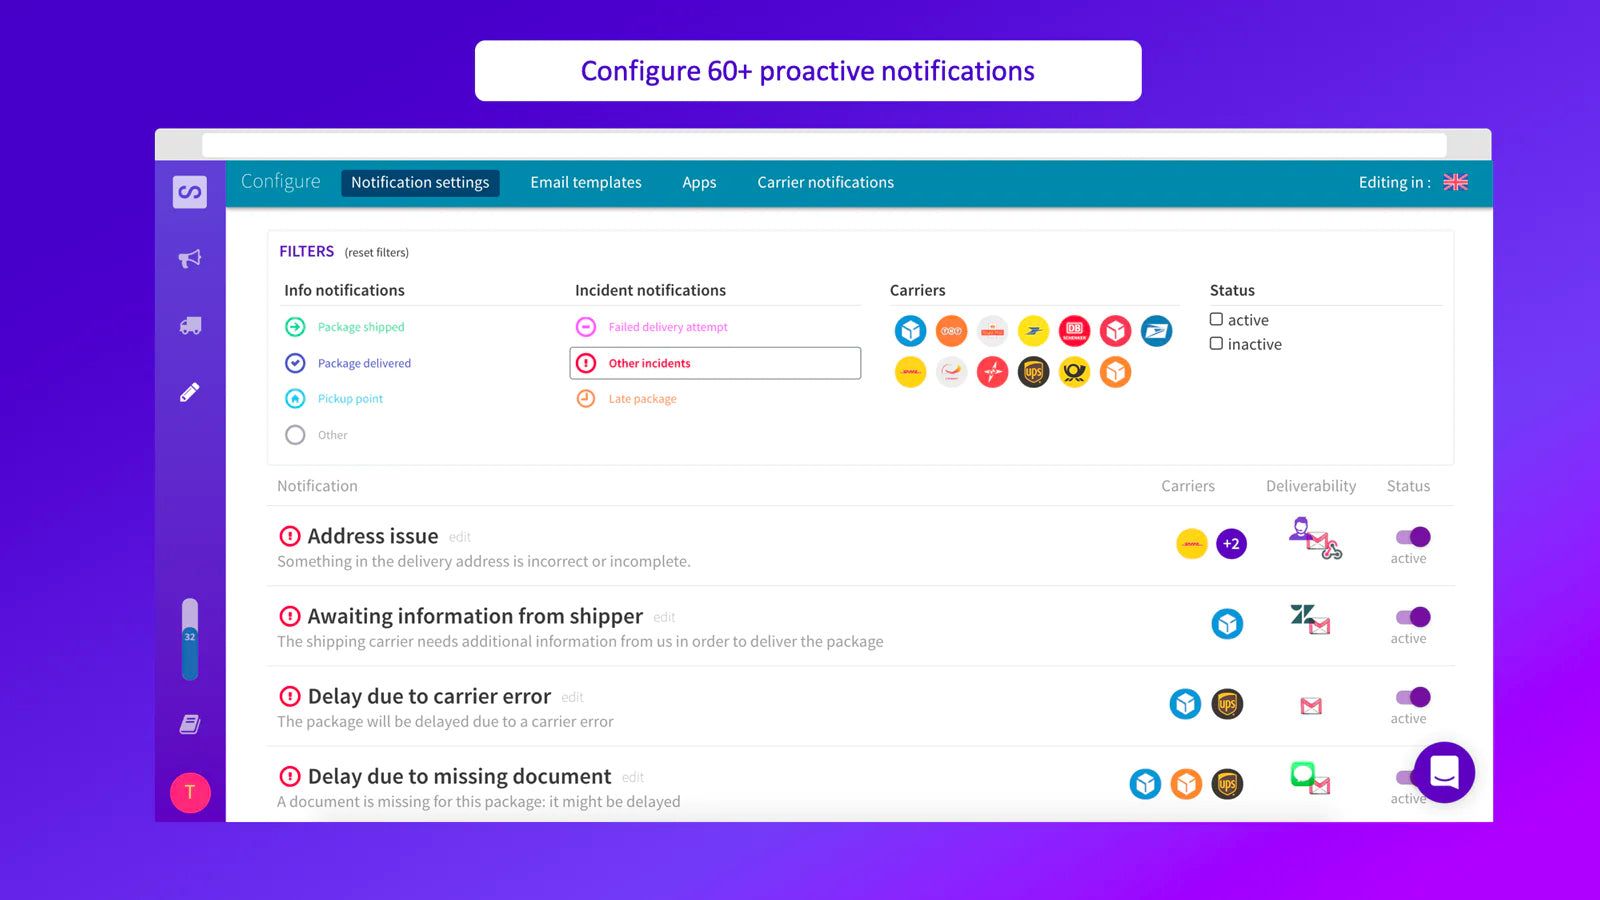 Configure 60+ proactive notifications